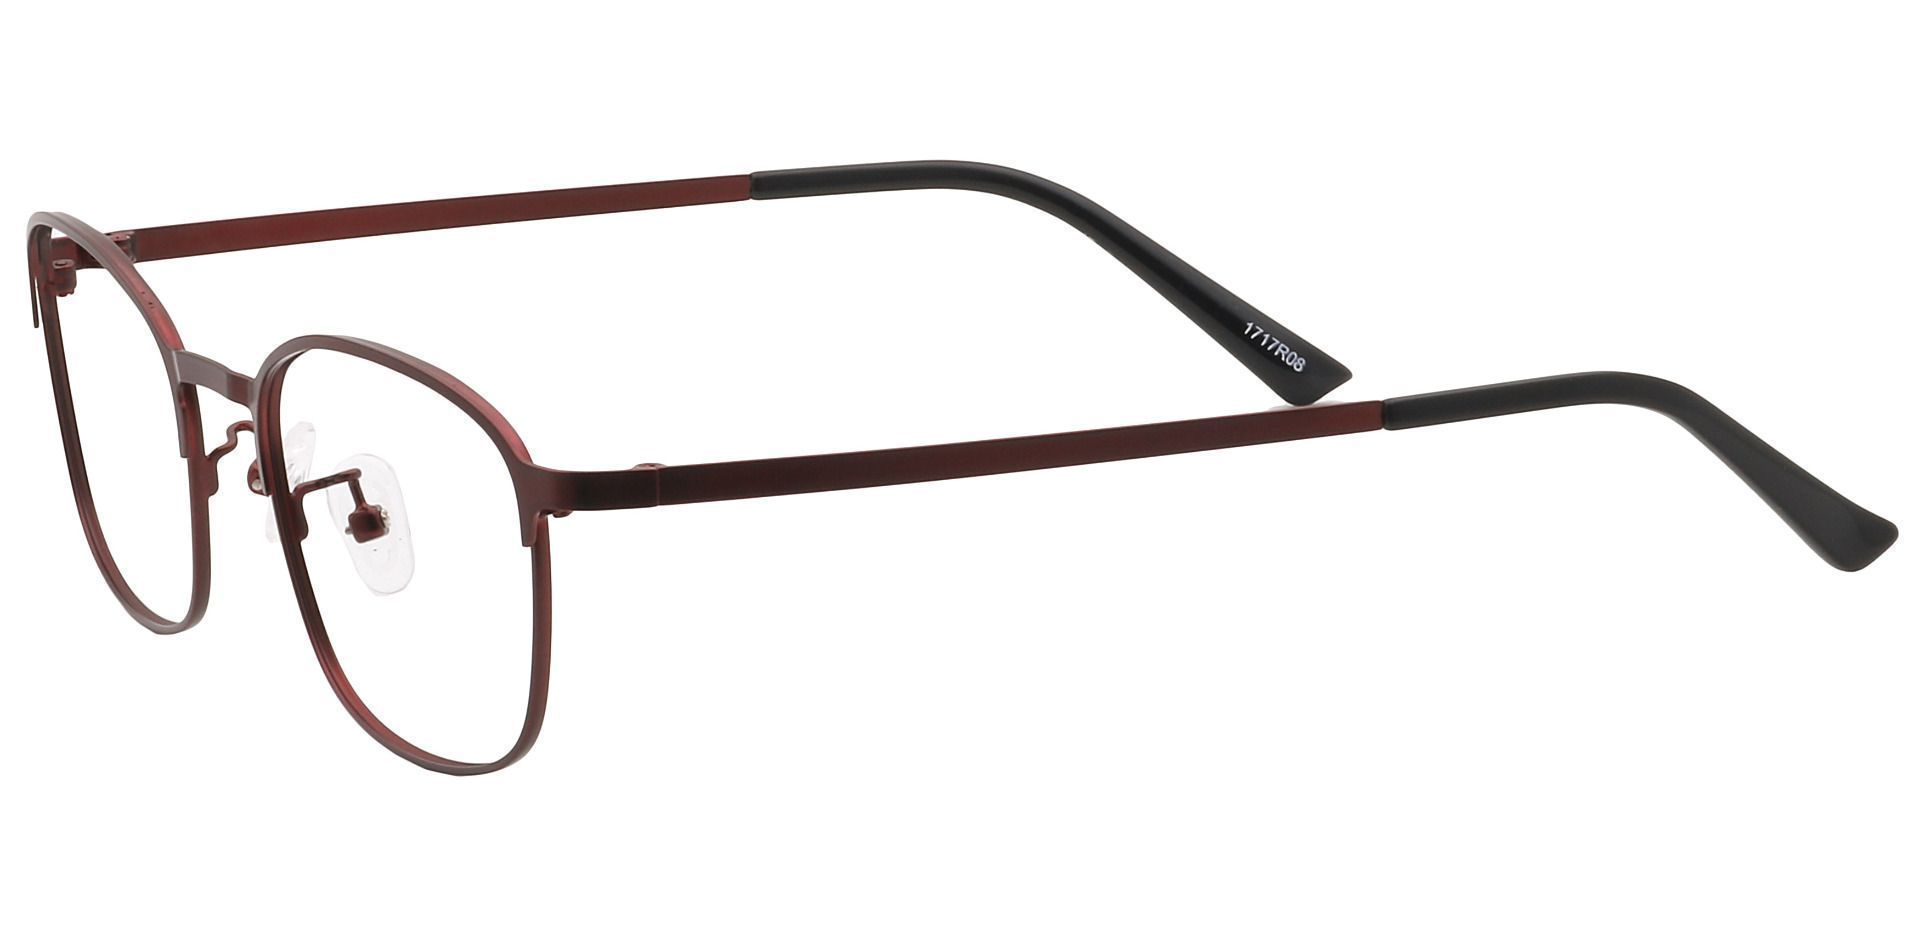 Carmen Square Eyeglasses Frame - Red